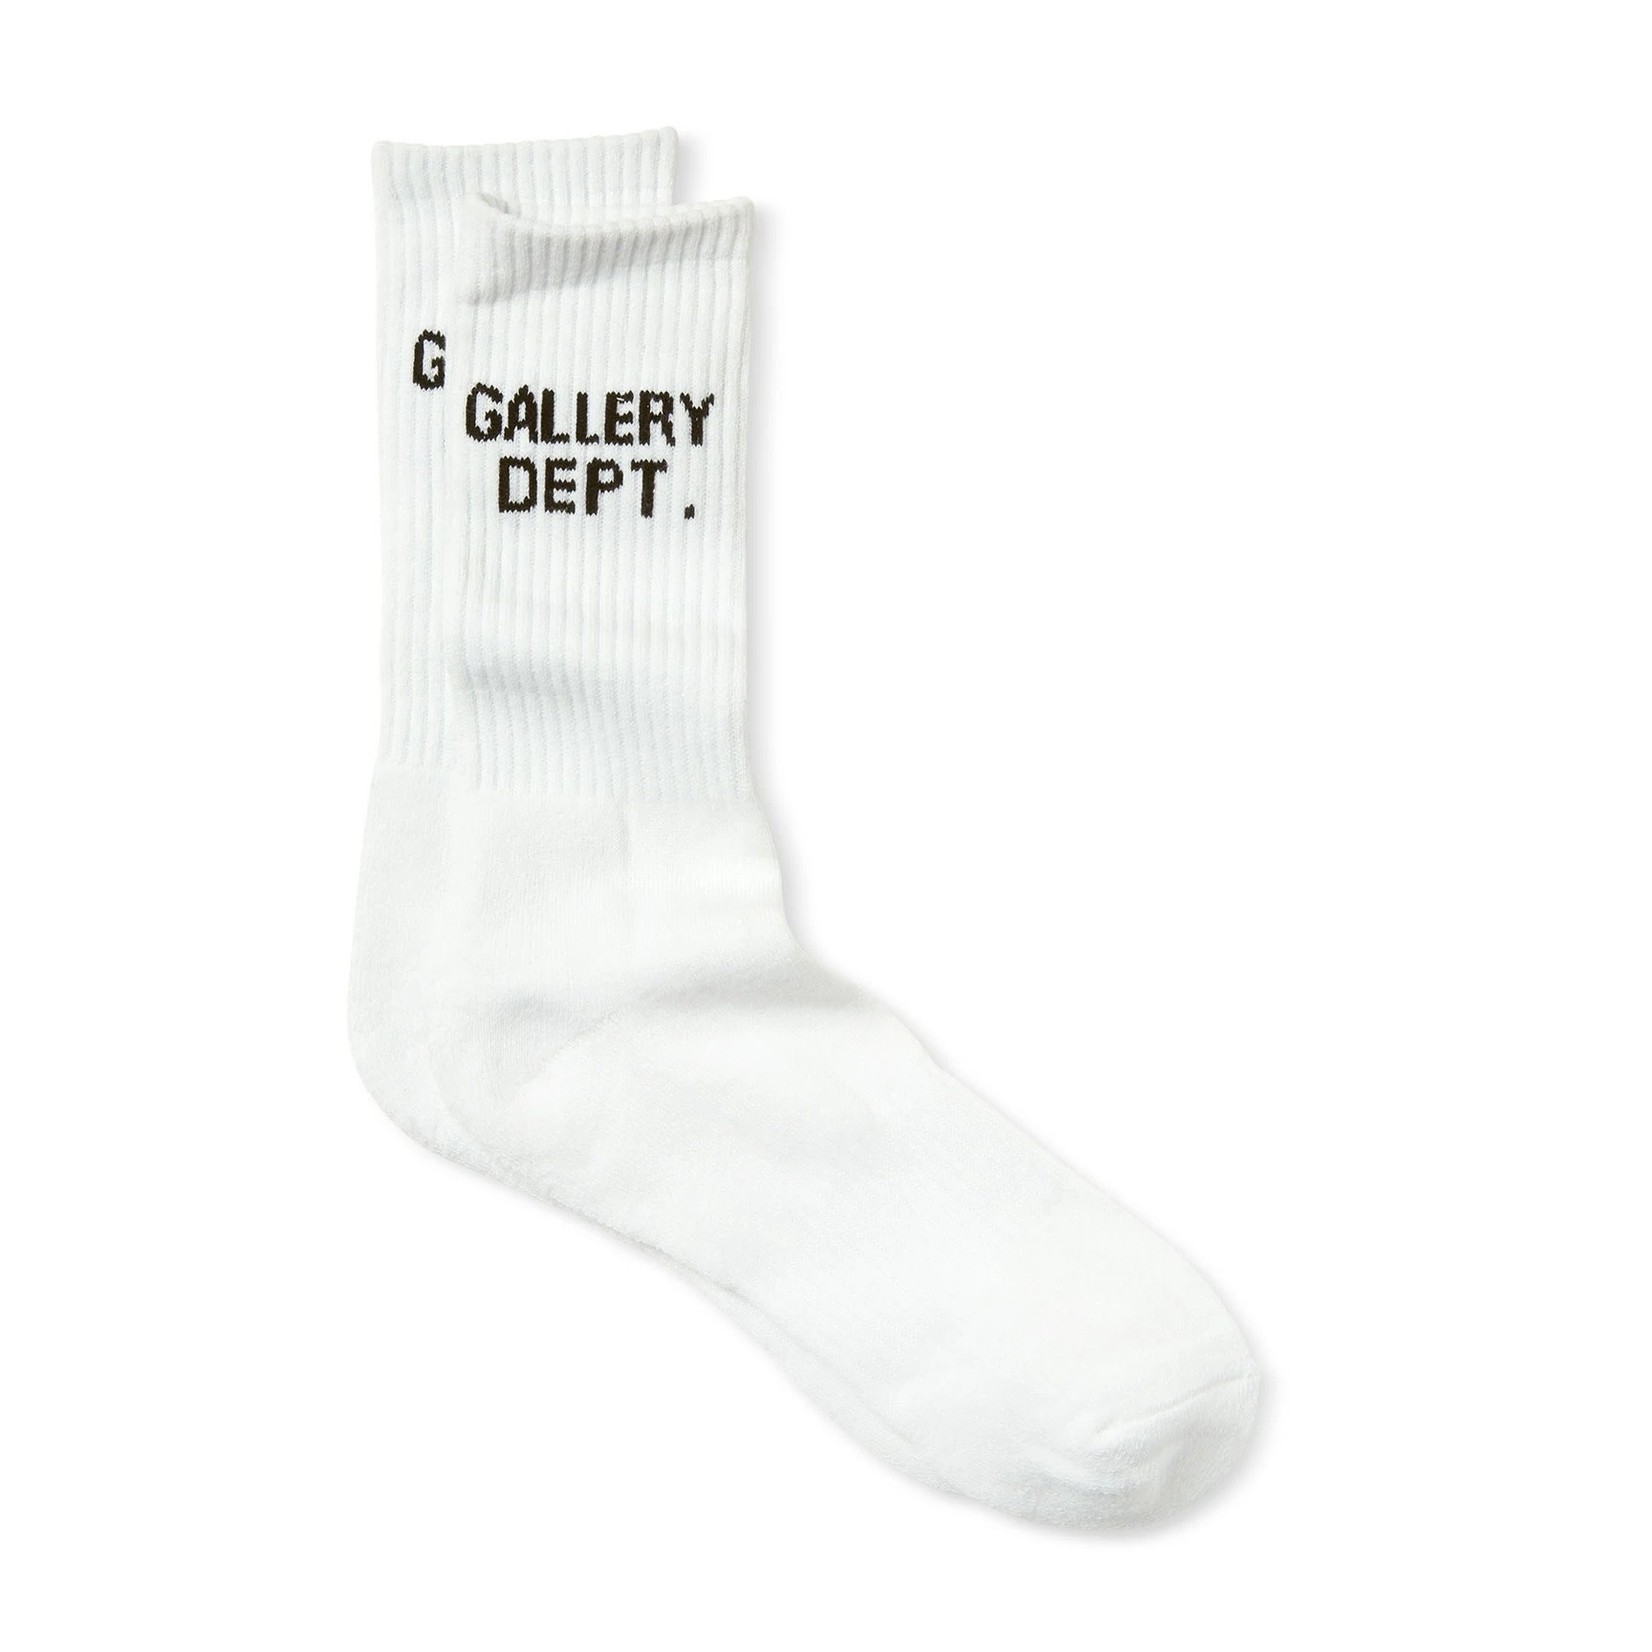 Gallery Dept White Clean Socks